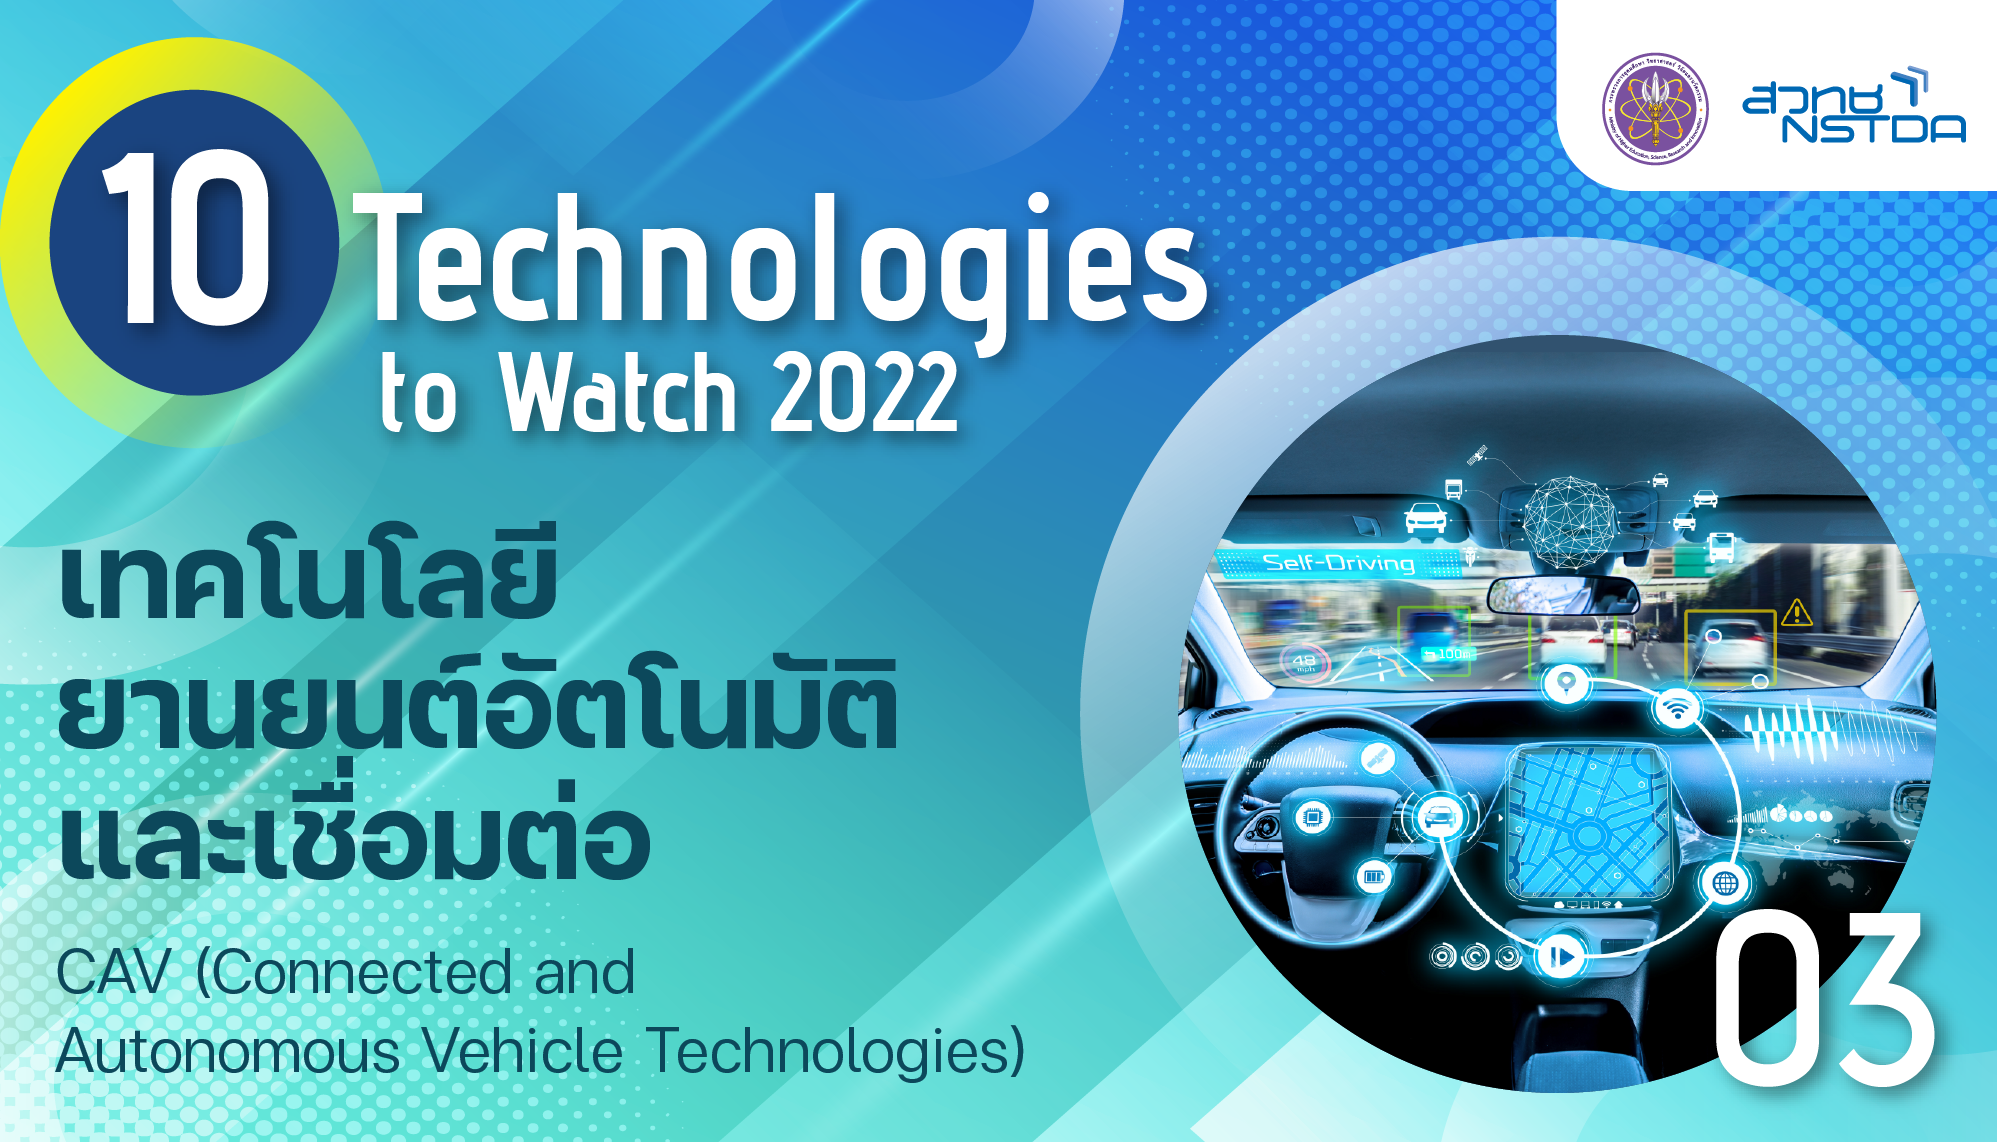 เทคโนโลยียานยนต์อัตโนมัติและเชื่อมต่อ (Connected and Autonomous Vehicle Technologies)